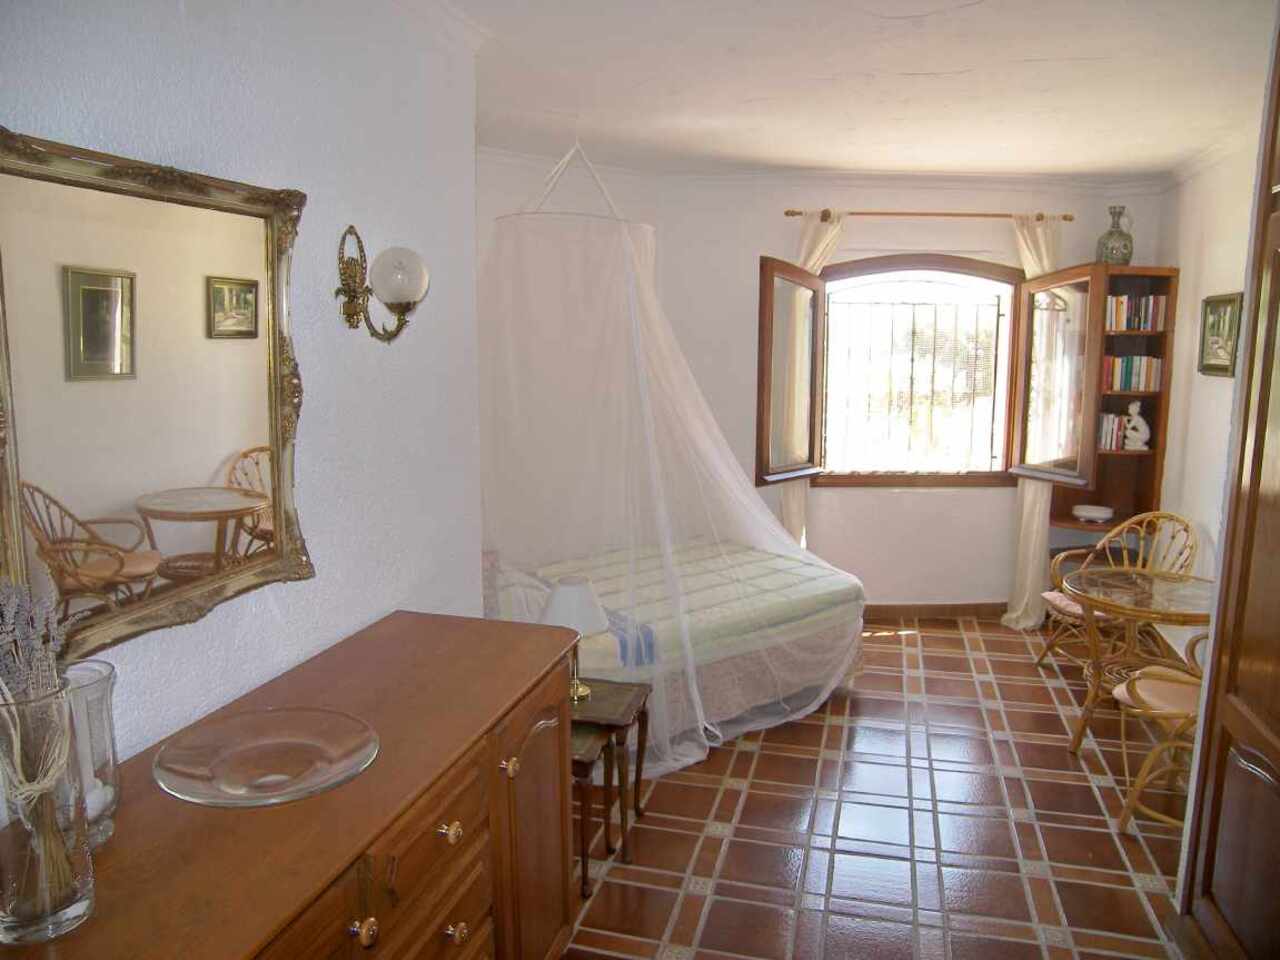 For Sale. Villa in Moraira